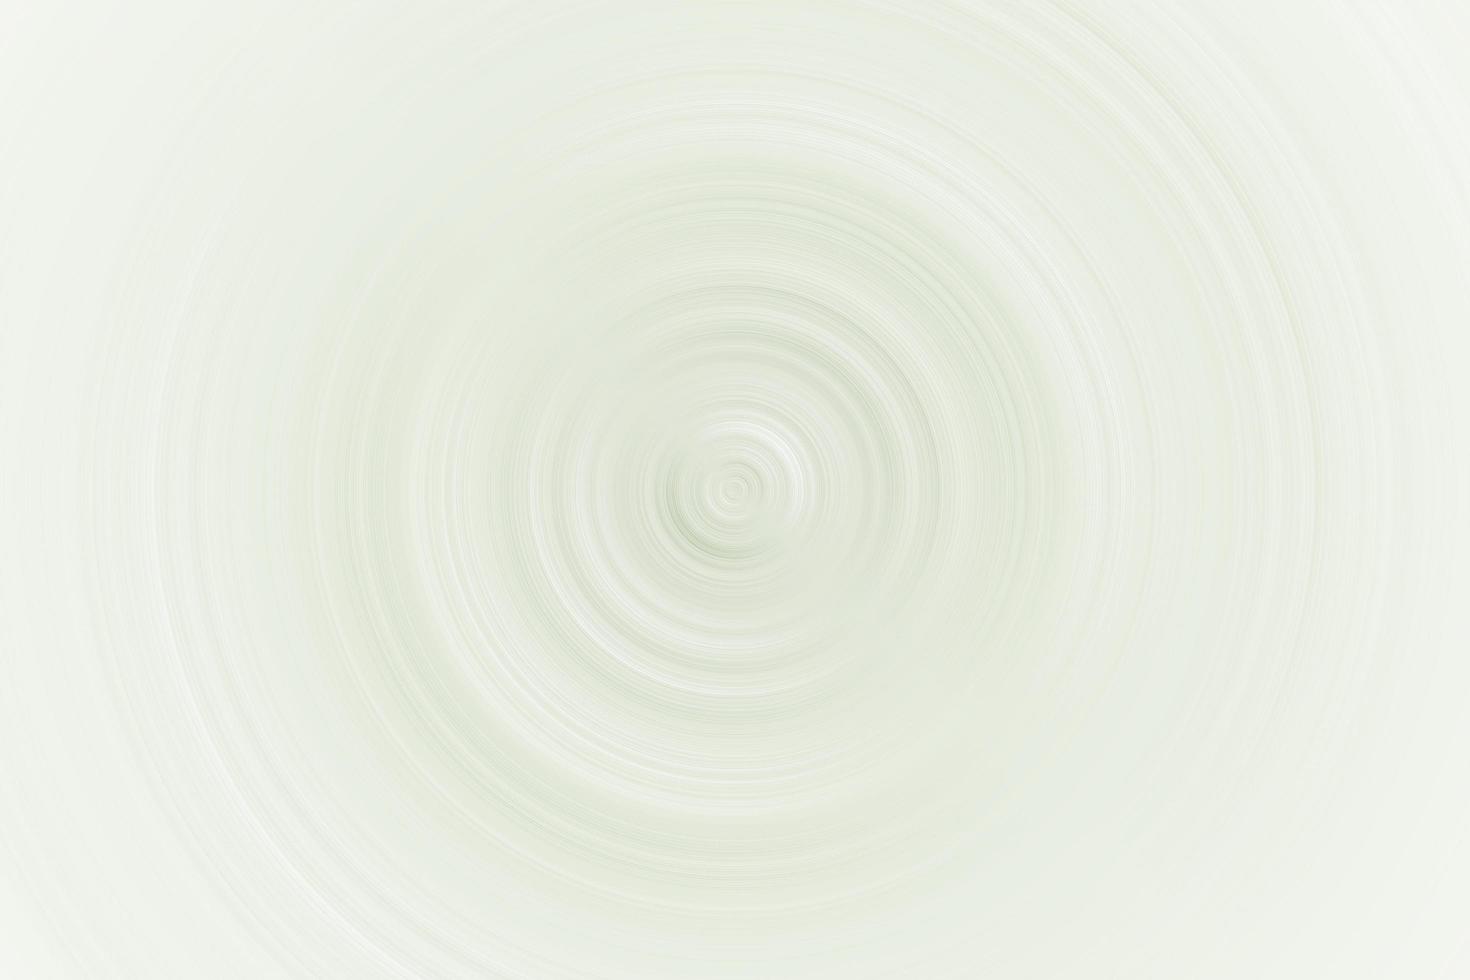 vortex abstrait vert clair sur fond blanc, texture de fond douce photo